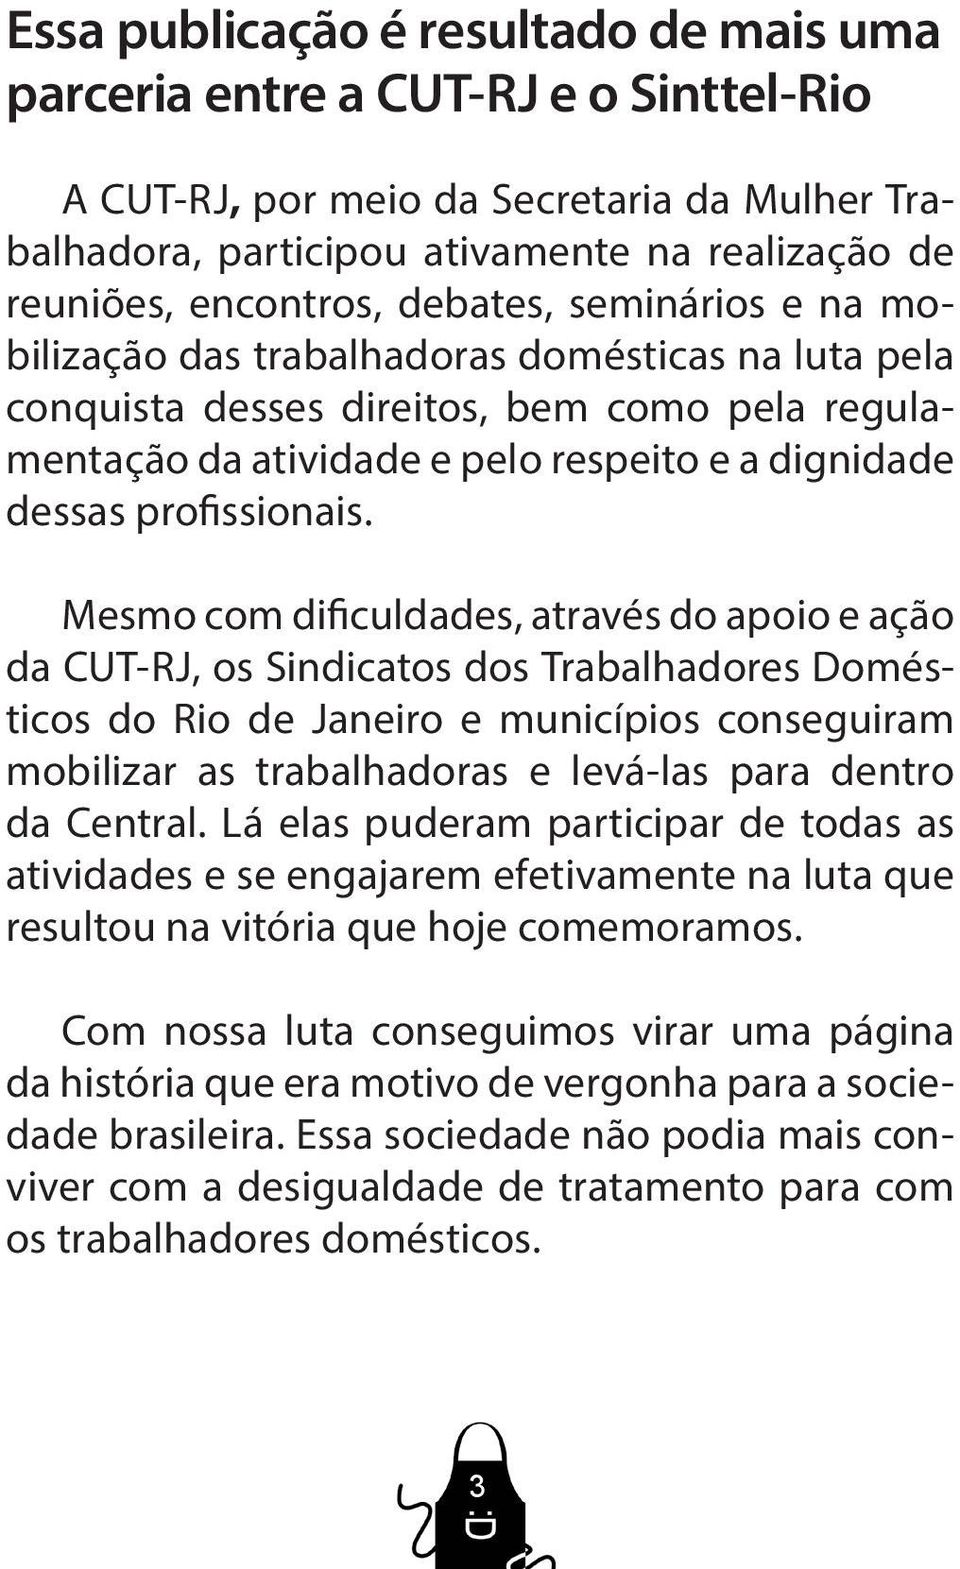 Mesmo com dificuldades, através do apoio e ação da CUT-RJ, os Sindicatos dos Trabalhadores Domésticos do Rio de Janeiro e municípios conseguiram mobilizar as trabalhadoras e levá-las para dentro da